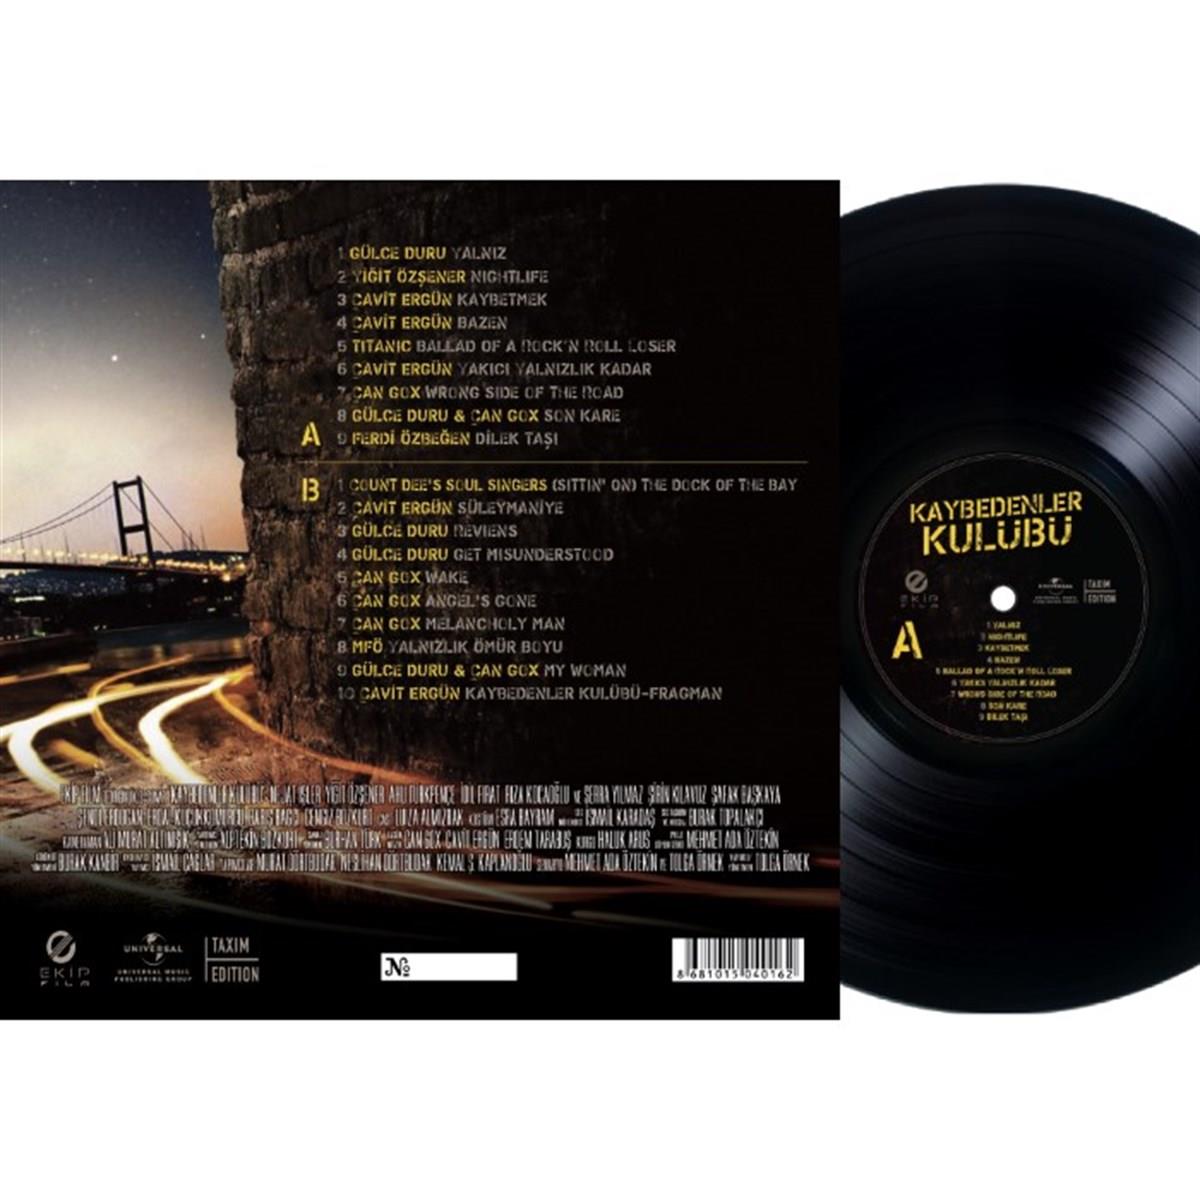 Kaybedenler Kulübü - Film Müzikleri (Plak) | Universal Music Taxim Edition